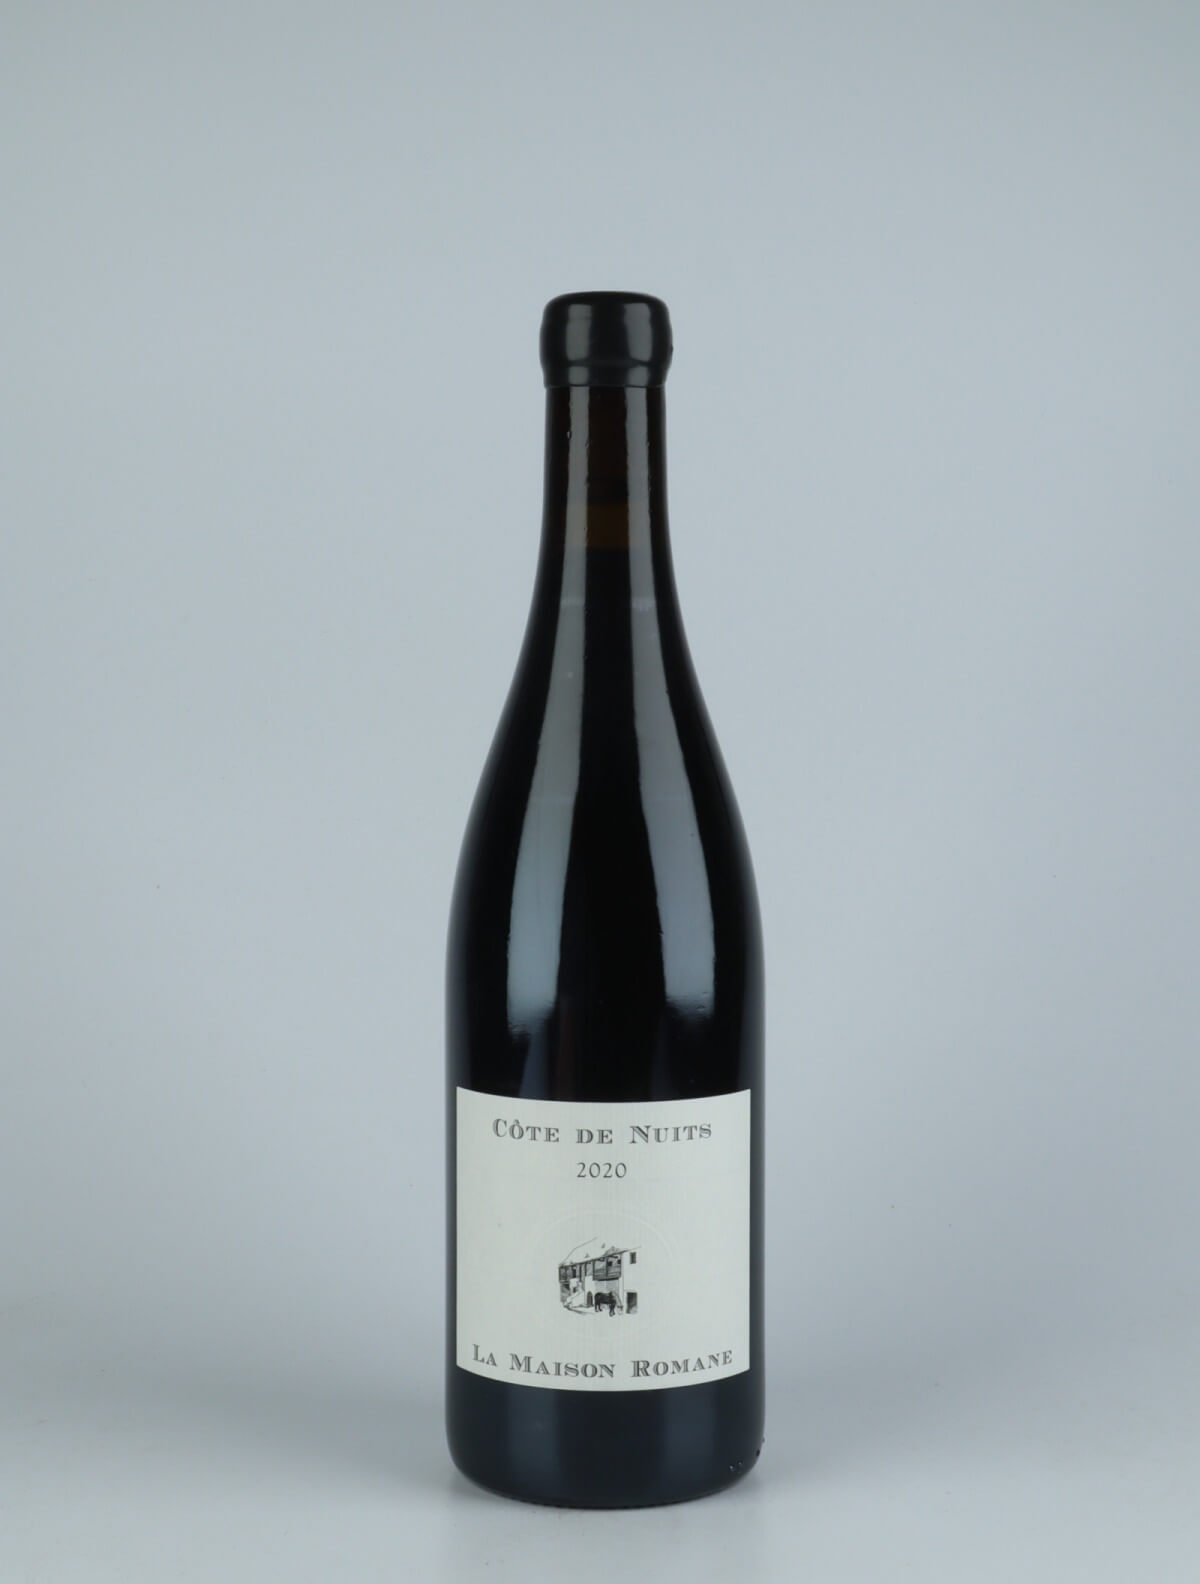 A bottle 2020 Côtes de Nuits Villages Red wine from La Maison Romane, Burgundy in France